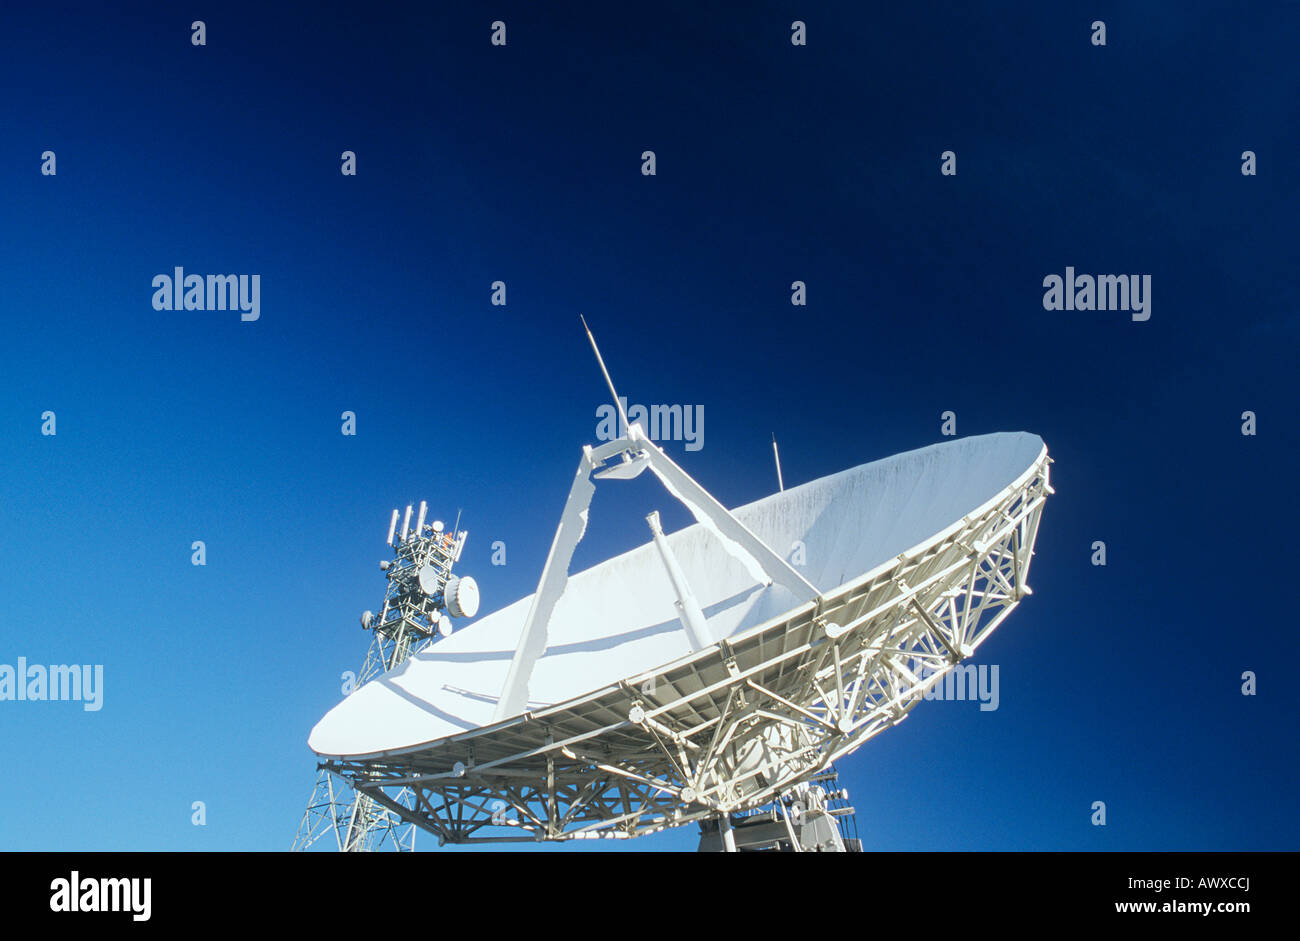 Telecommunications satellite dish and communications towers Stock Photo